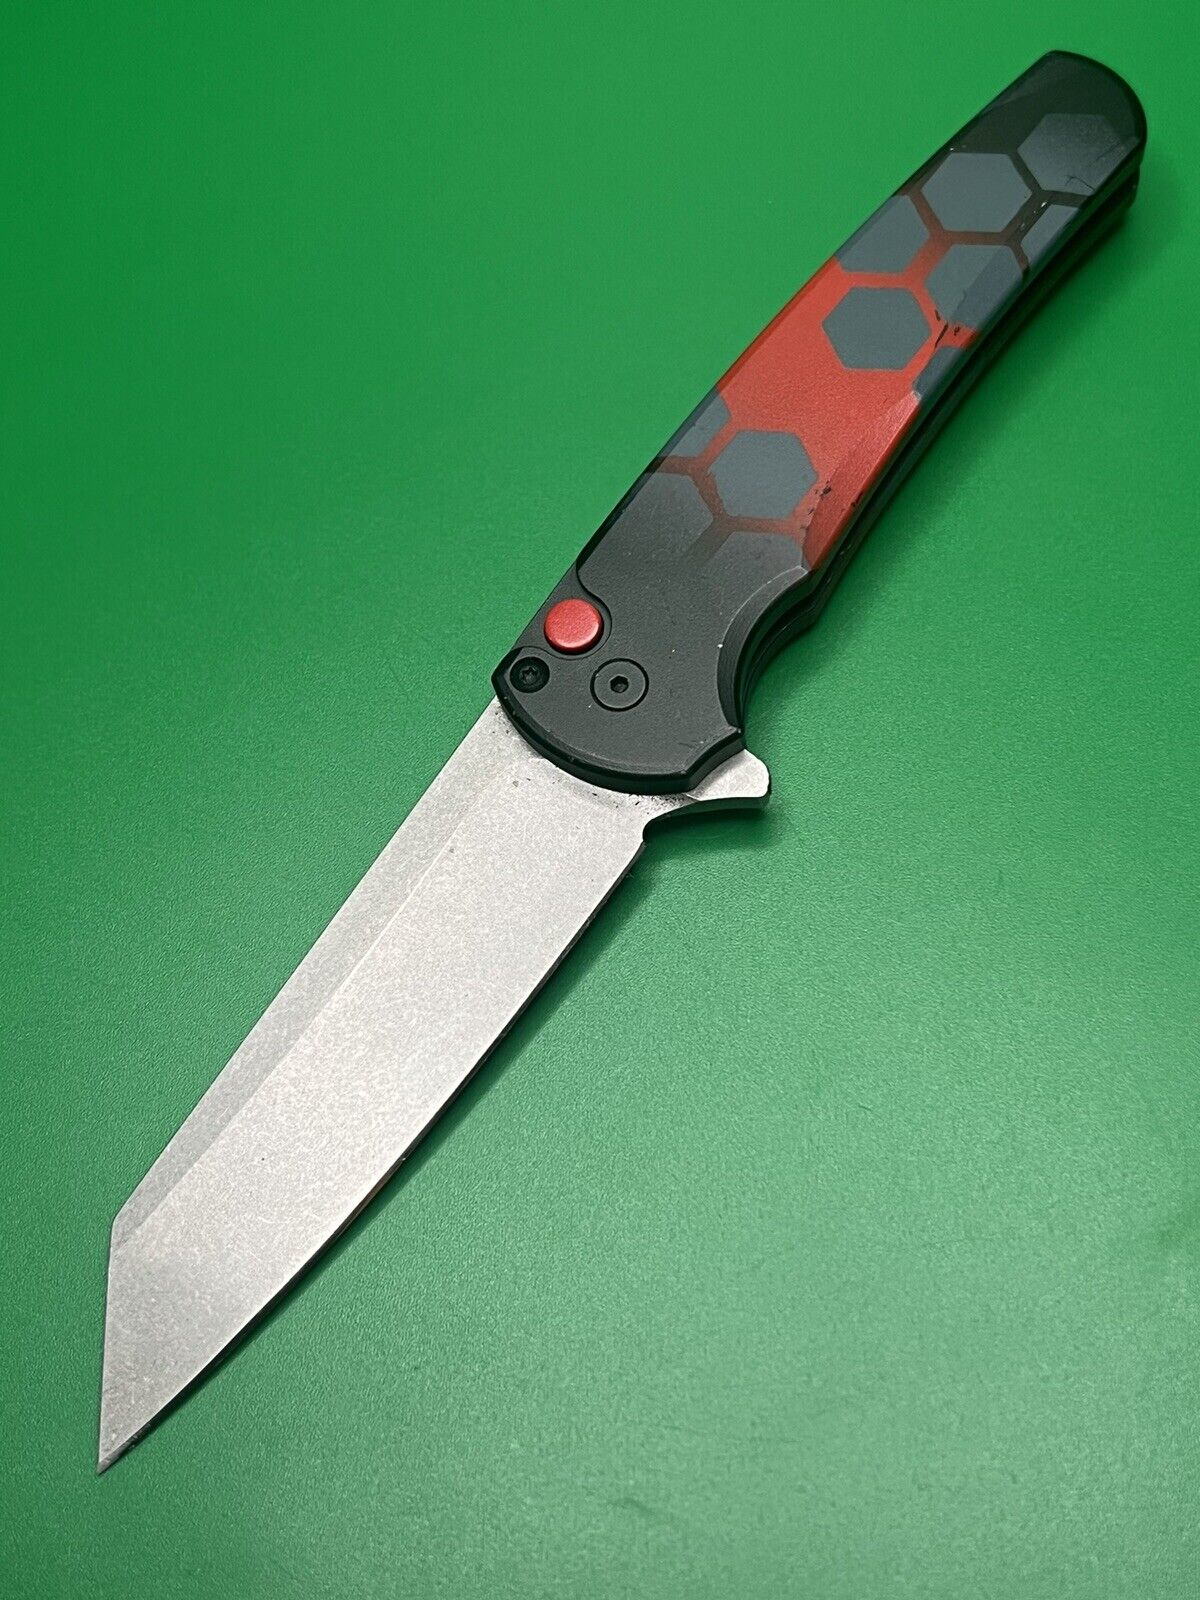 ProTech Malibu Knife 3.25in 20CV Custom Cerakote